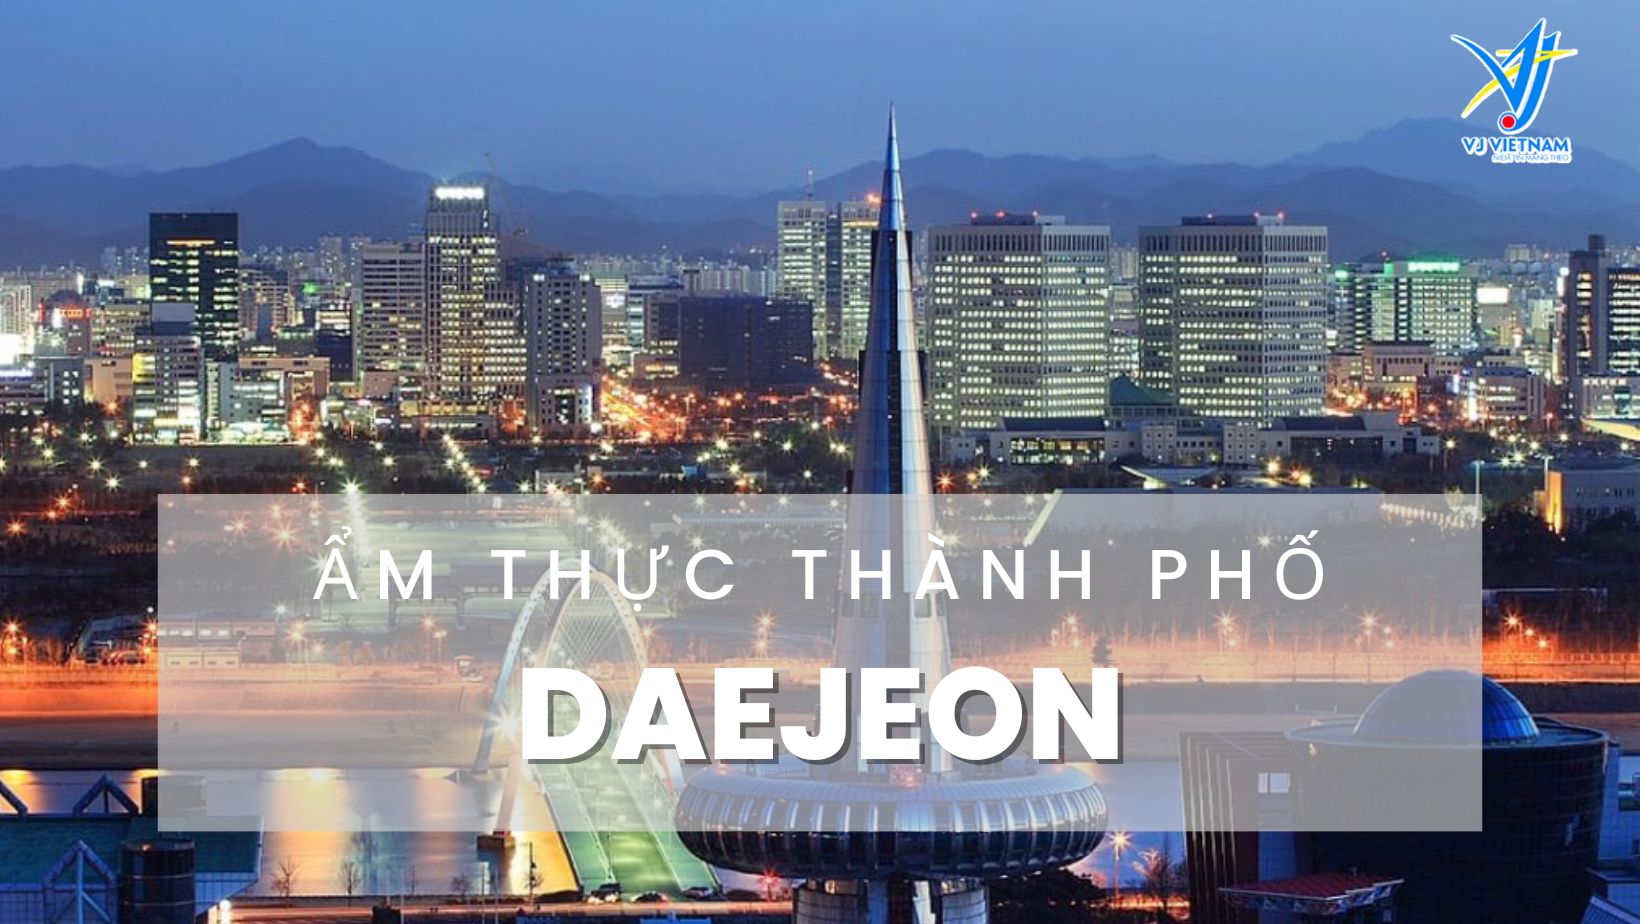 Trọn bộ âm thực Daejeon độc đáo cho du học sinh Hàn Quốc